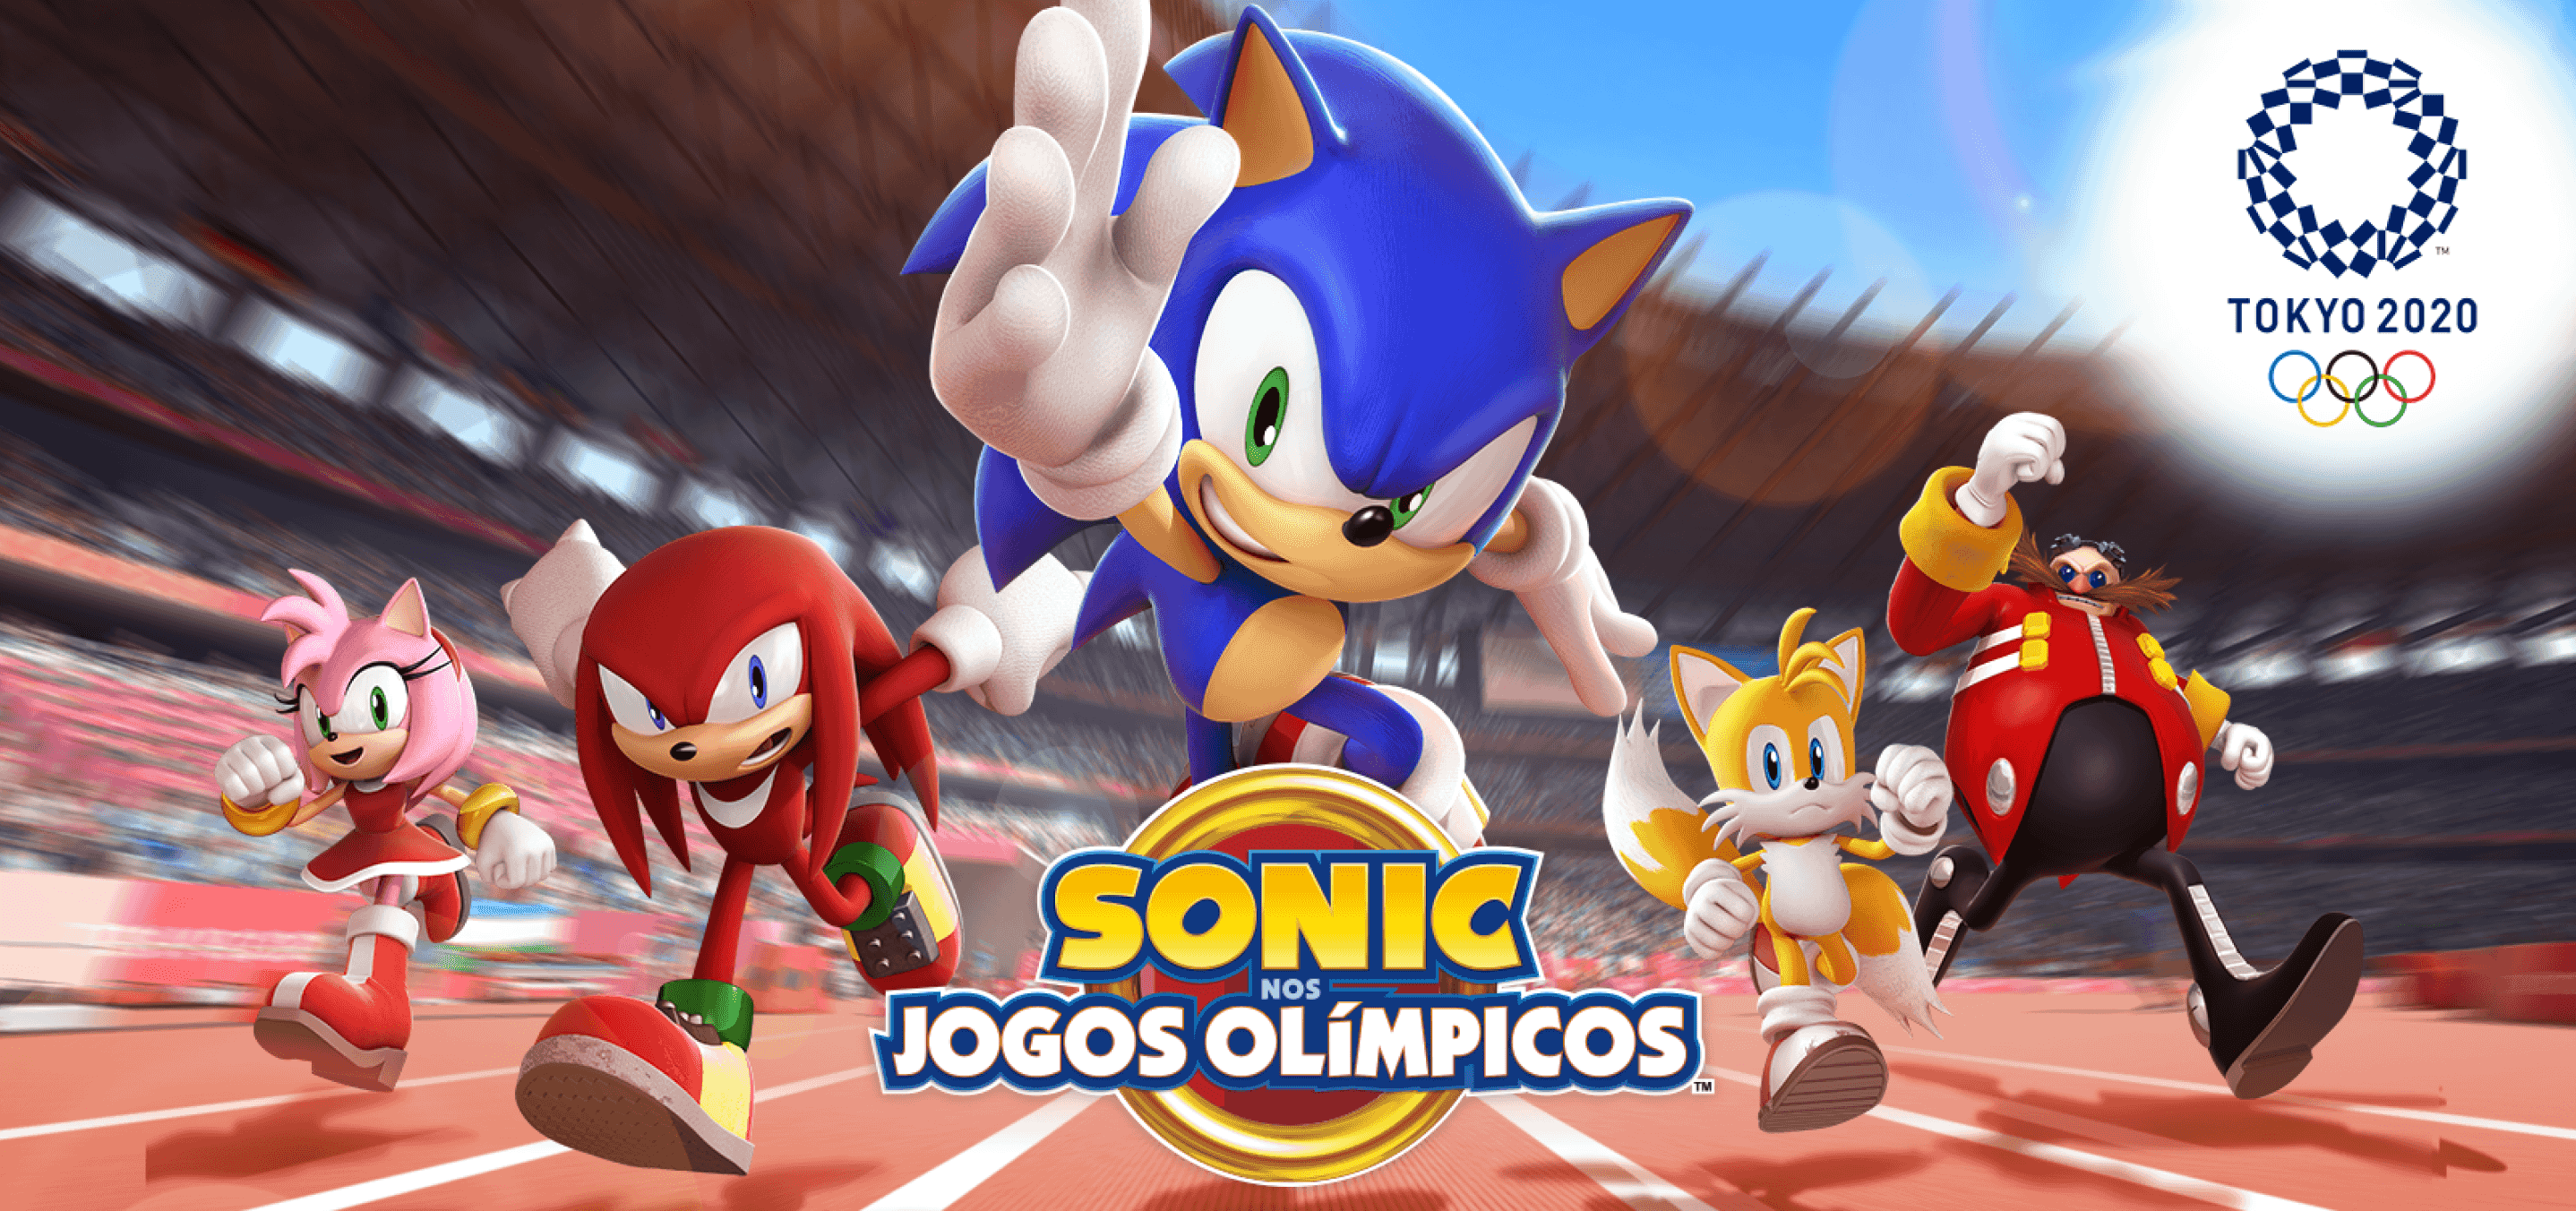 Sonic nos Jogos Olímpicos de Tóquio 2020 recebe trailer comemorativo e promoções especiais de aniversário